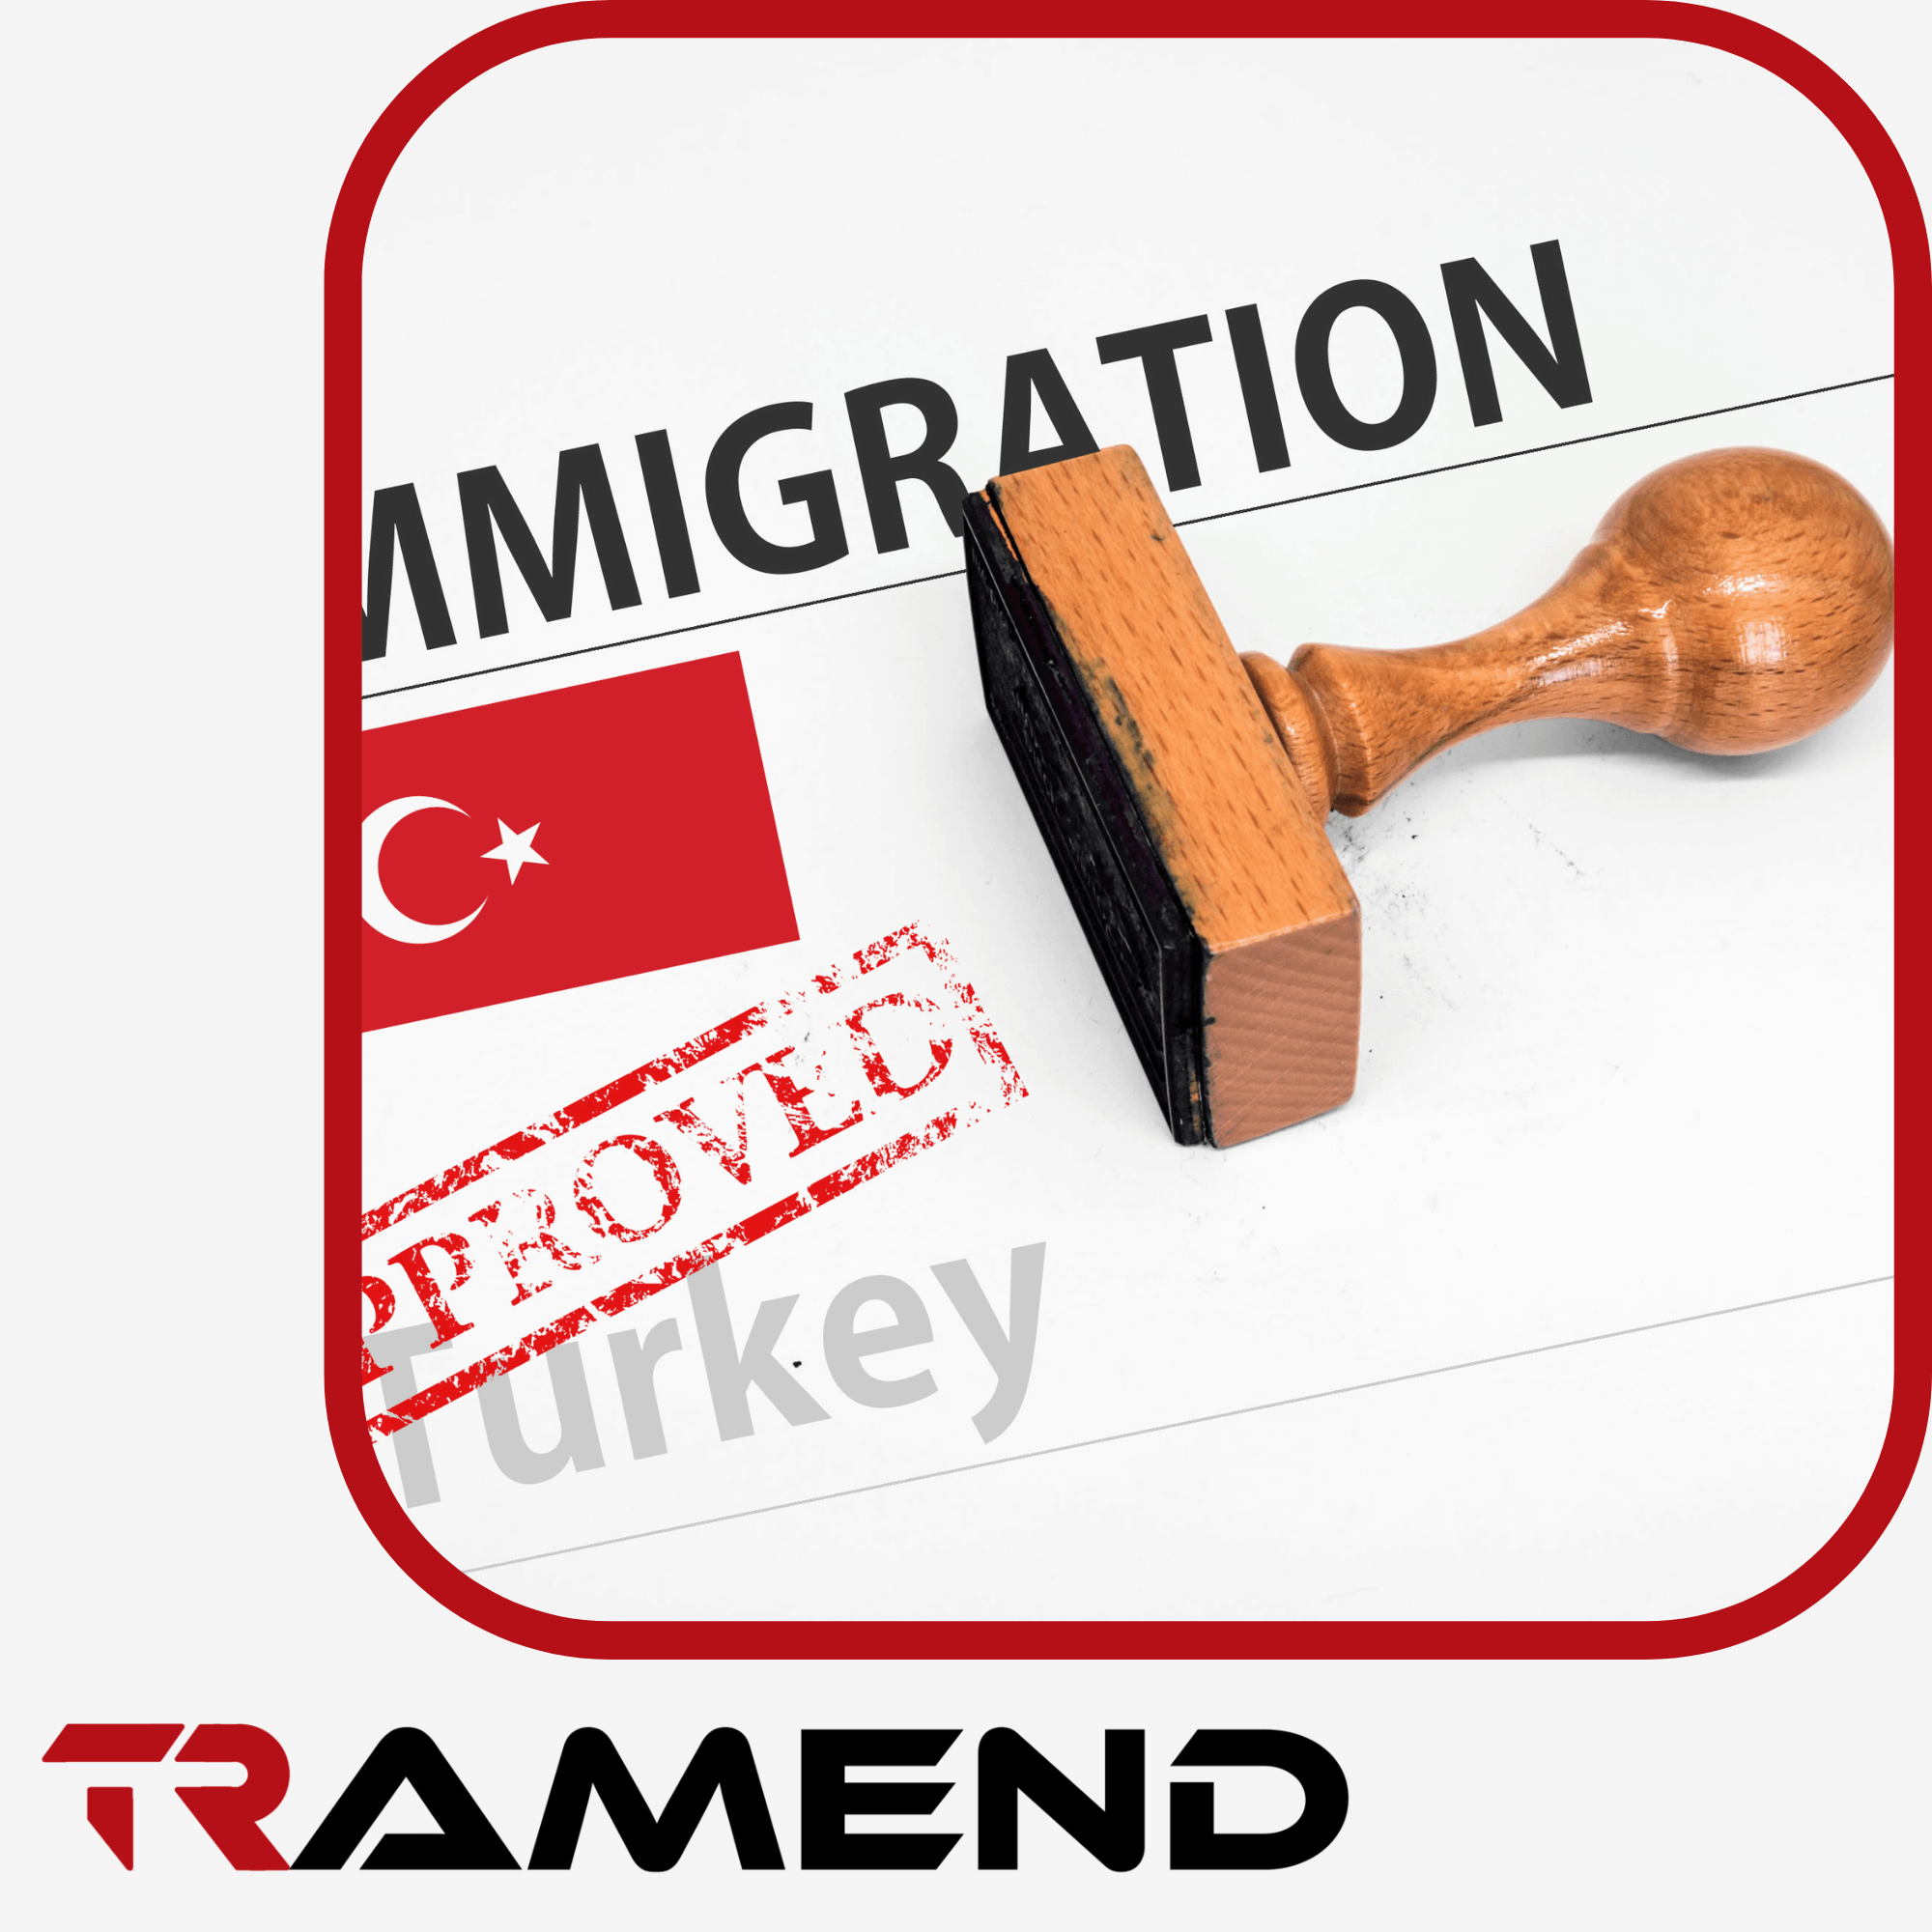 روش های مهاجرت به ترکیه و اخذ تابعیت